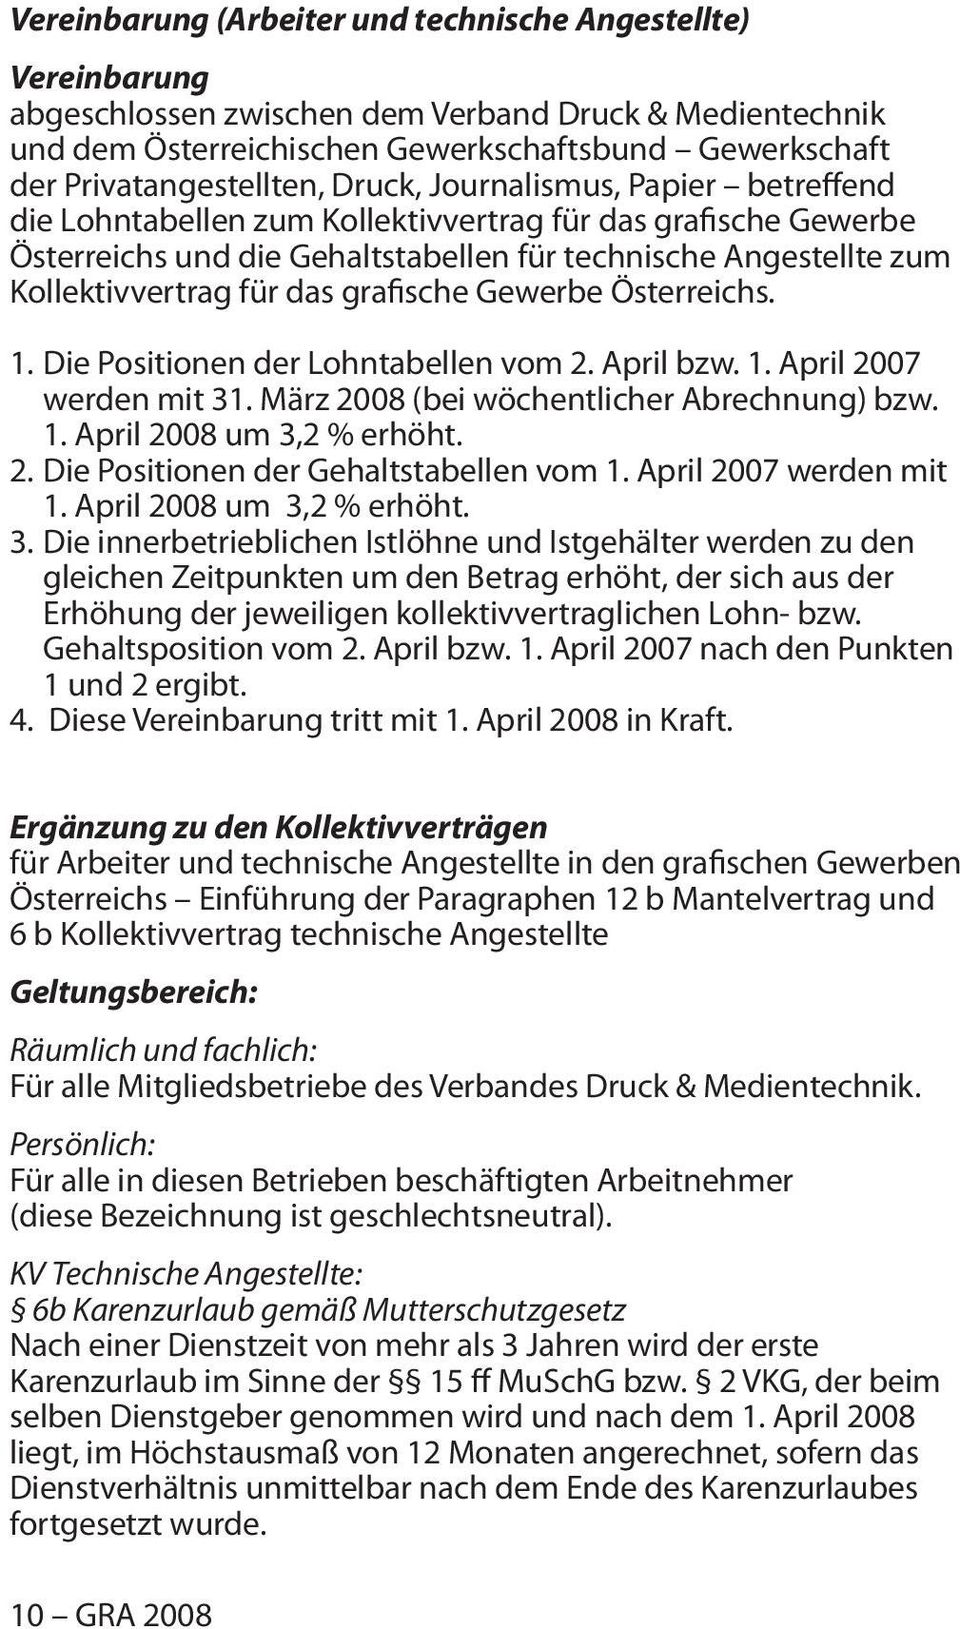 Kollektivvertrag für das grafische Gewerbe Österreichs. 1. Die Positionen der Lohntabellen vom 2. April bzw. 1. April 2007 werden mit 31. März 2008 (bei wöchentlicher Abrechnung) bzw. 1. April 2008 um 3,2 % erhöht.